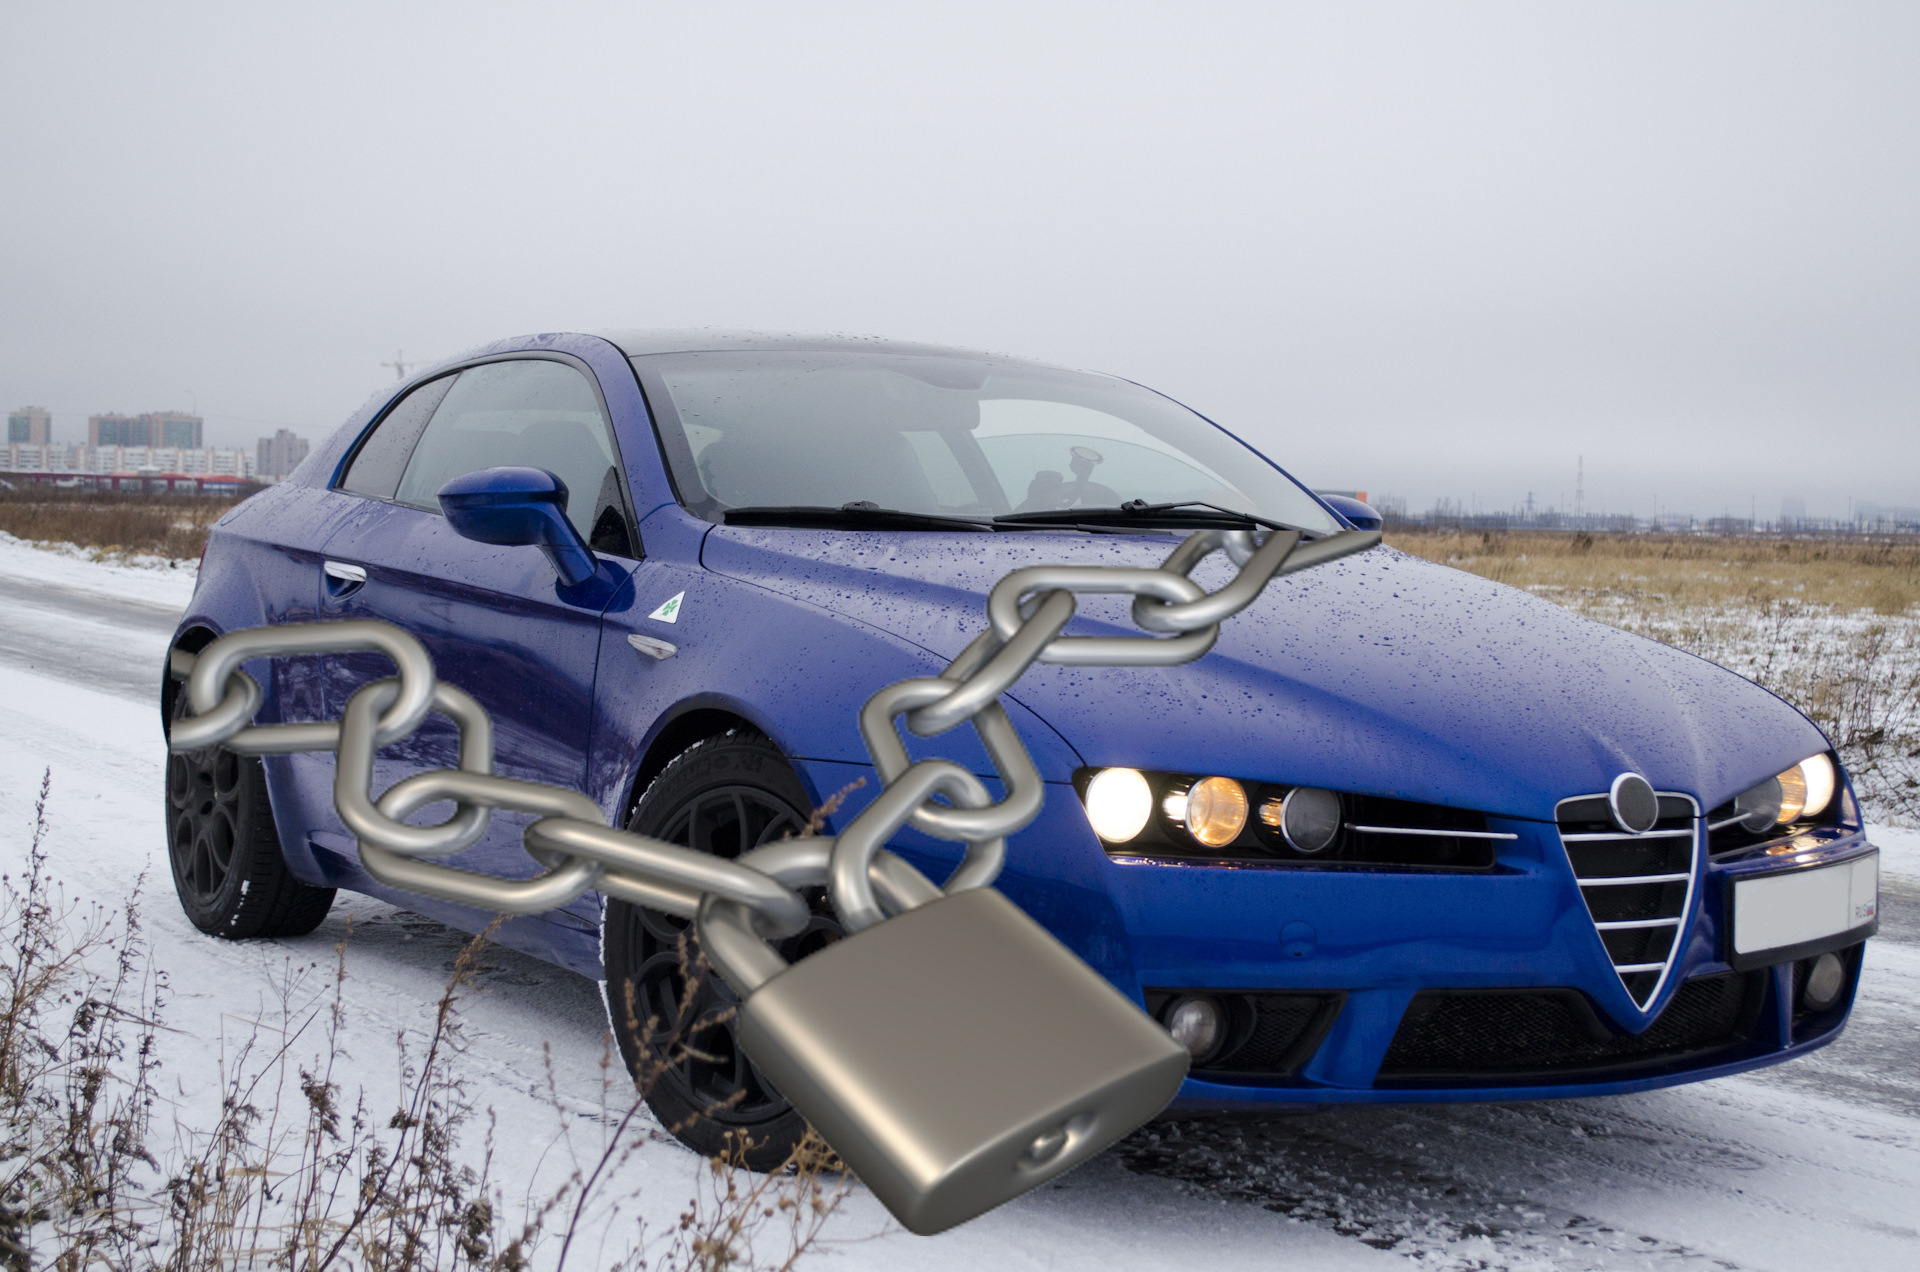 Formas de proteger un automóvil contra robos: los métodos más comunes y efectivos para proteger un automóvil contra robos